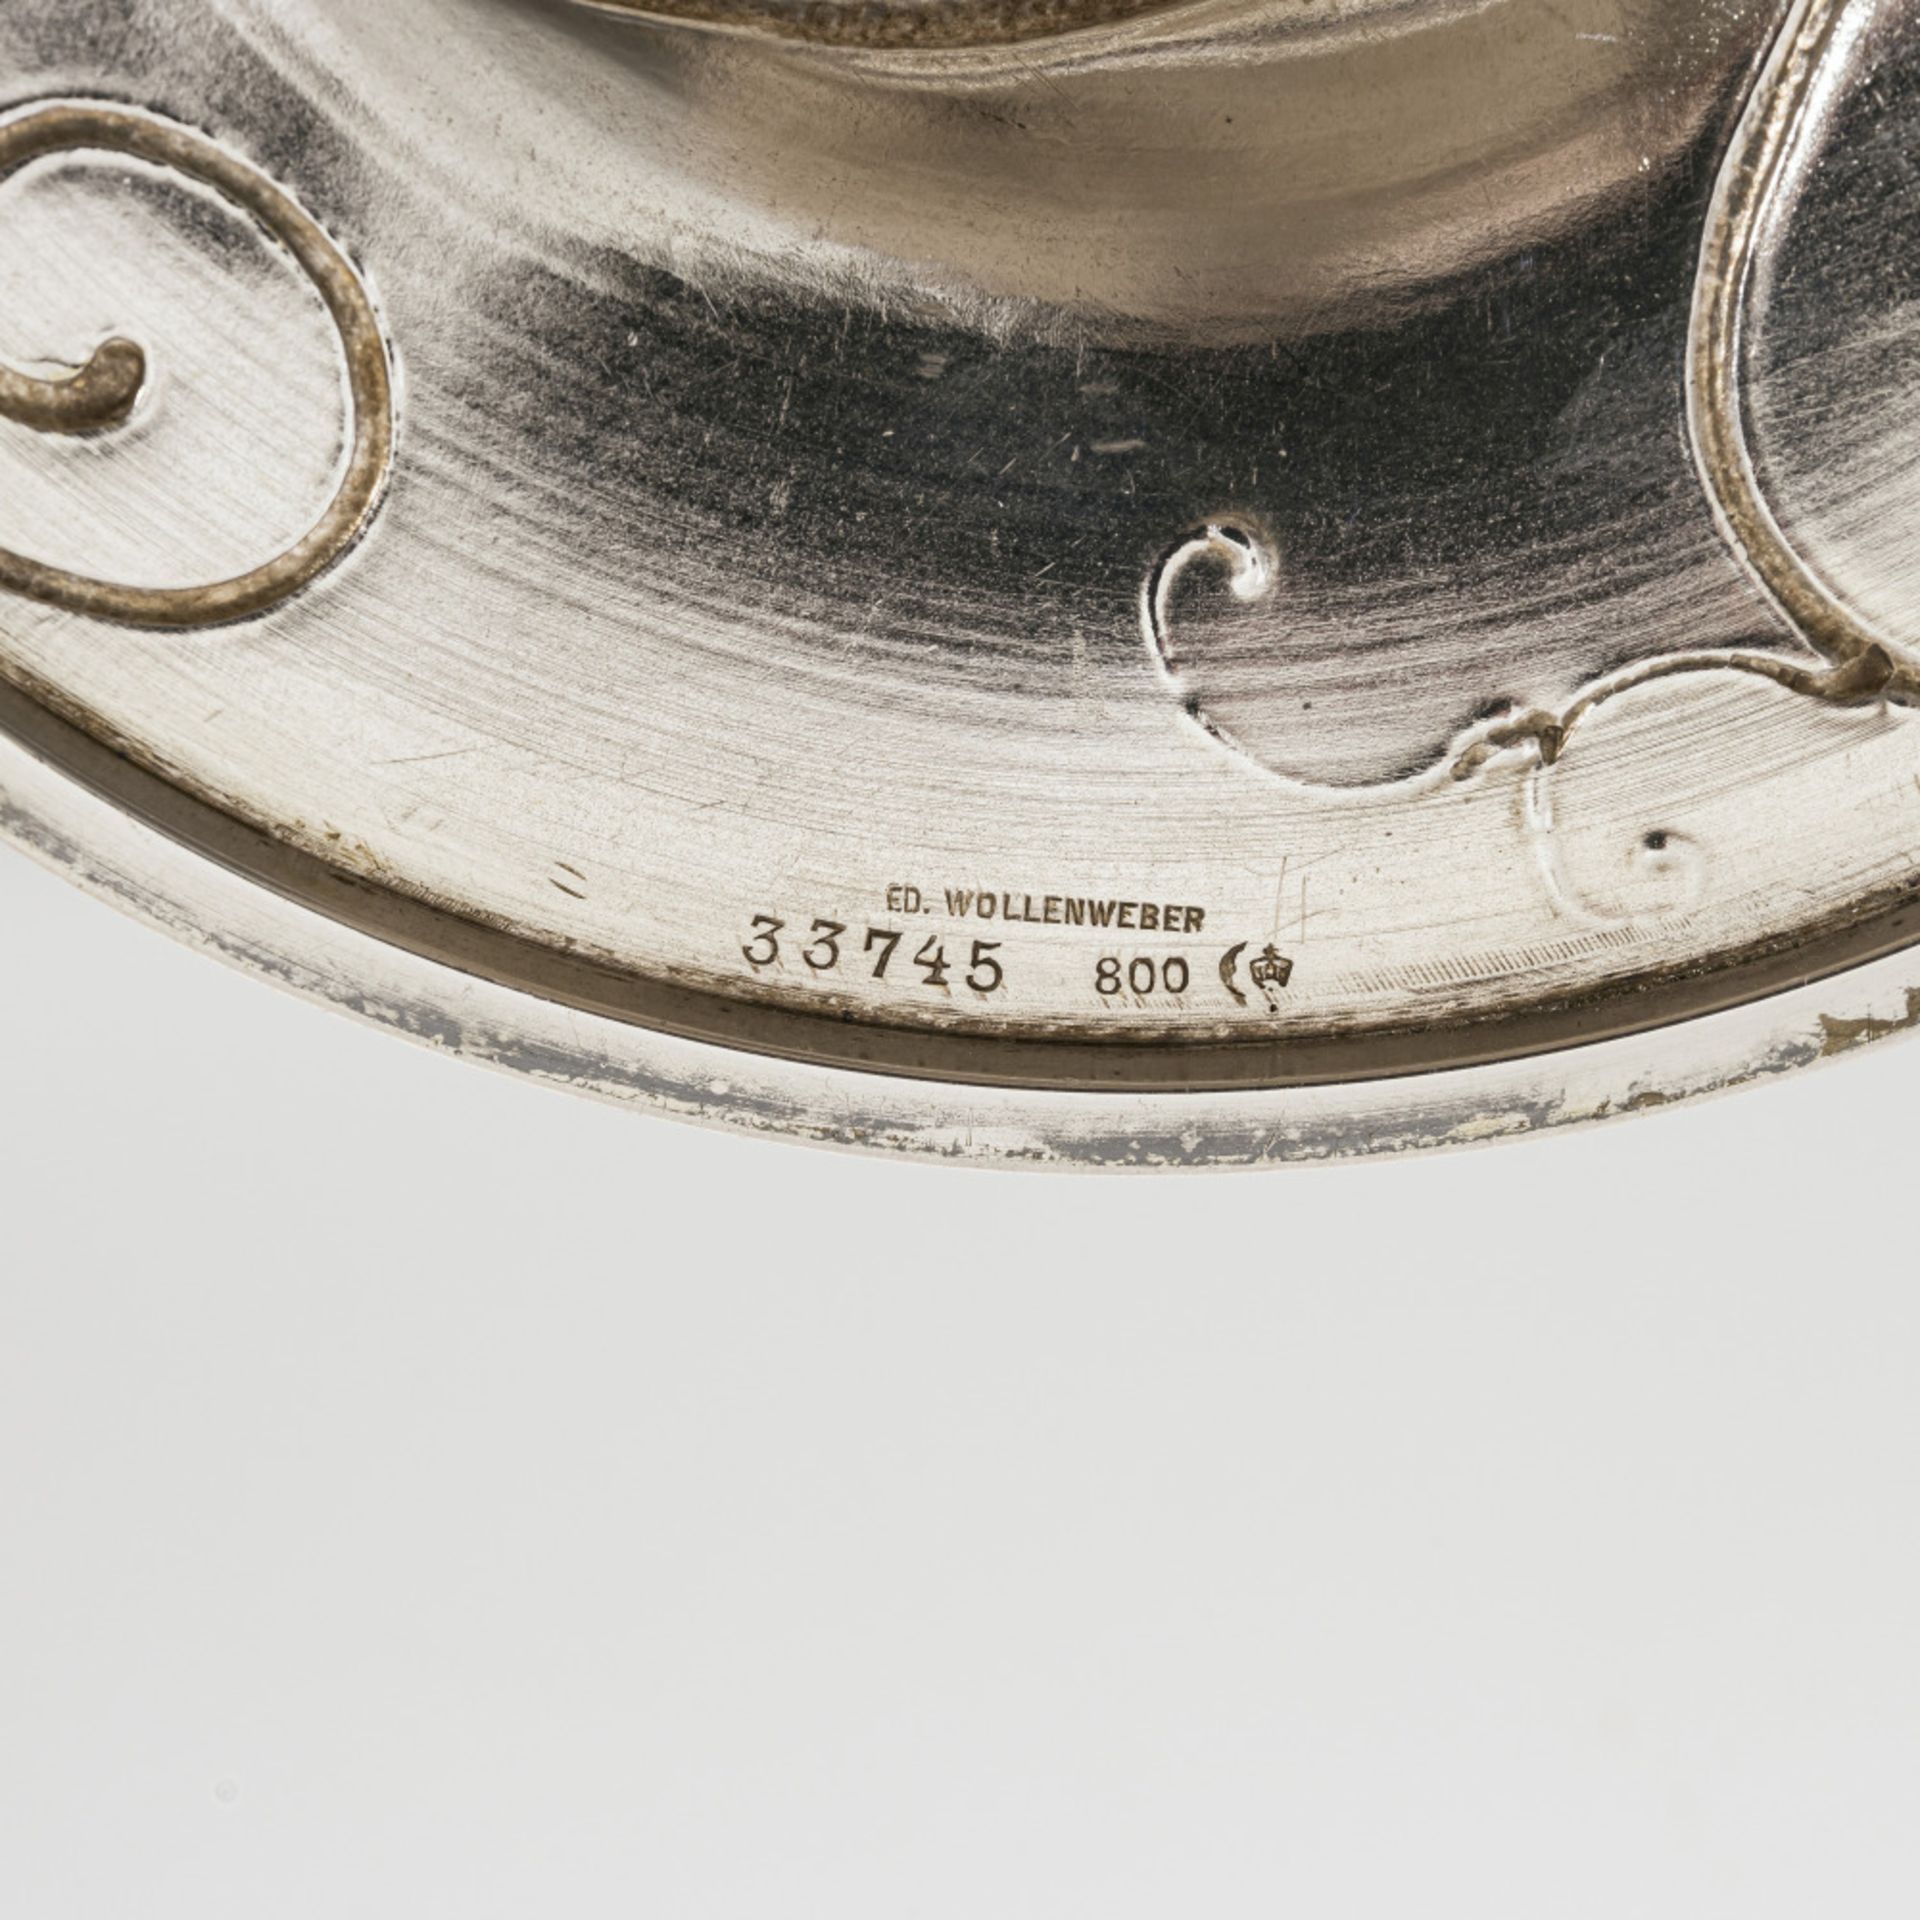 Pokal "PREIS VOM RHEIN 1901" - Deutsch (München), um 1901, Ed. Wollenweber - Bild 2 aus 2